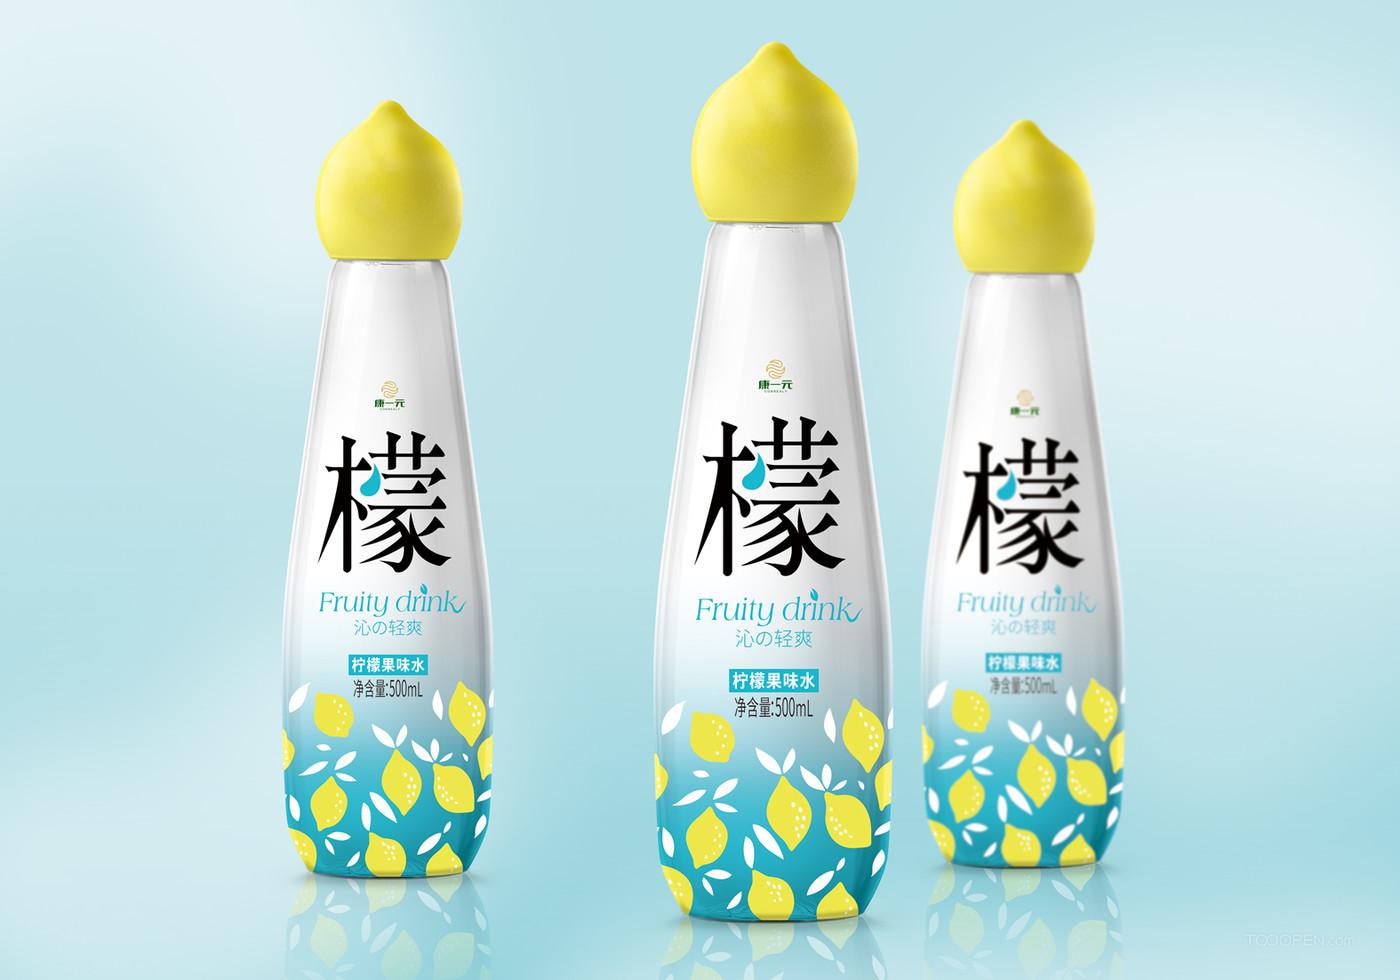 日本水果汽水产品包装设计图片-02